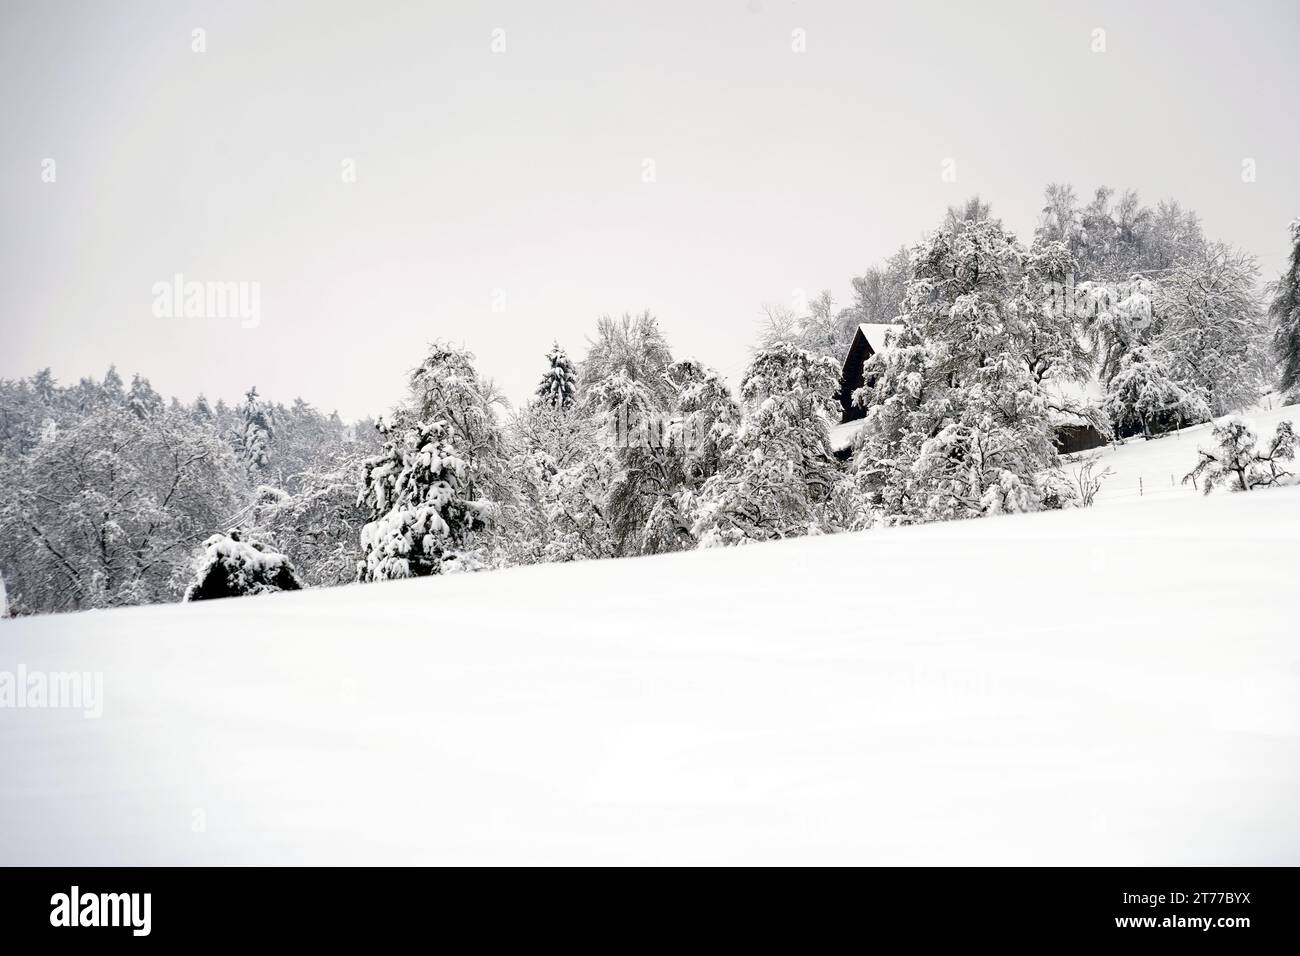 Landscape in winter season in village Urdorf in Switzerland under heavy snowfall in January 2021. Stock Photo